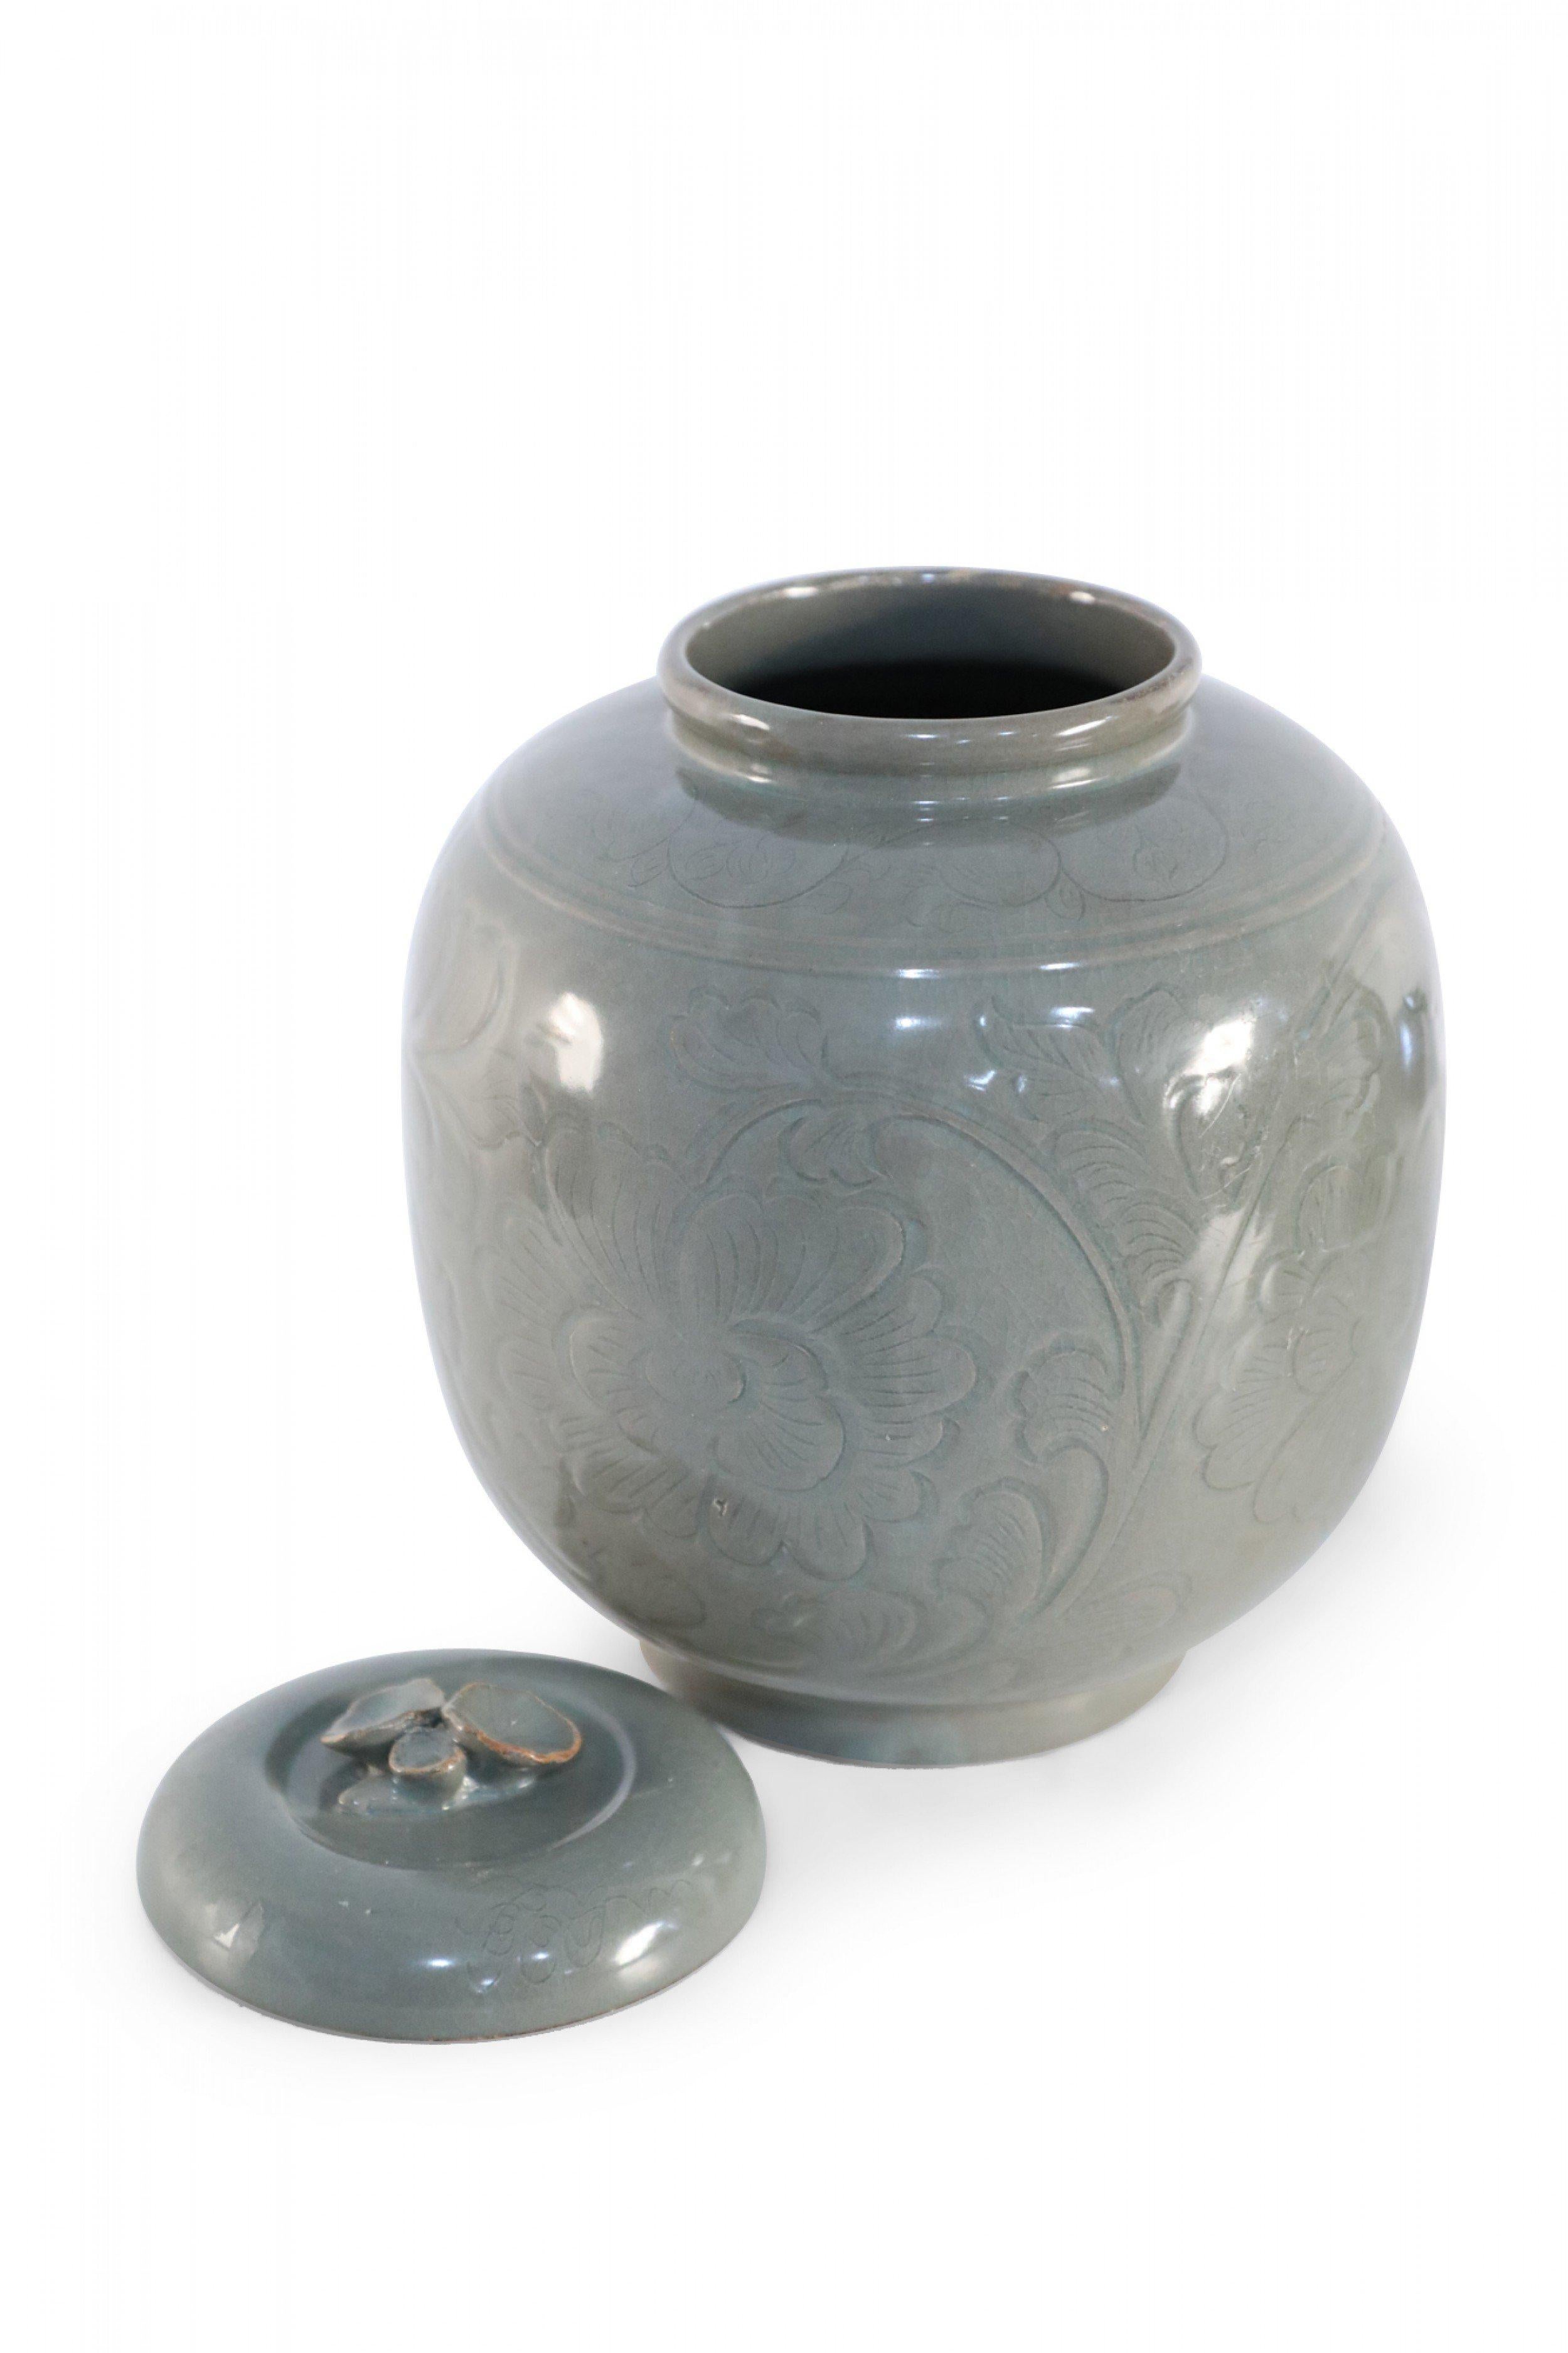 20th Century Chinese Sage and Tonal Botanical Motif Porcelain Jar